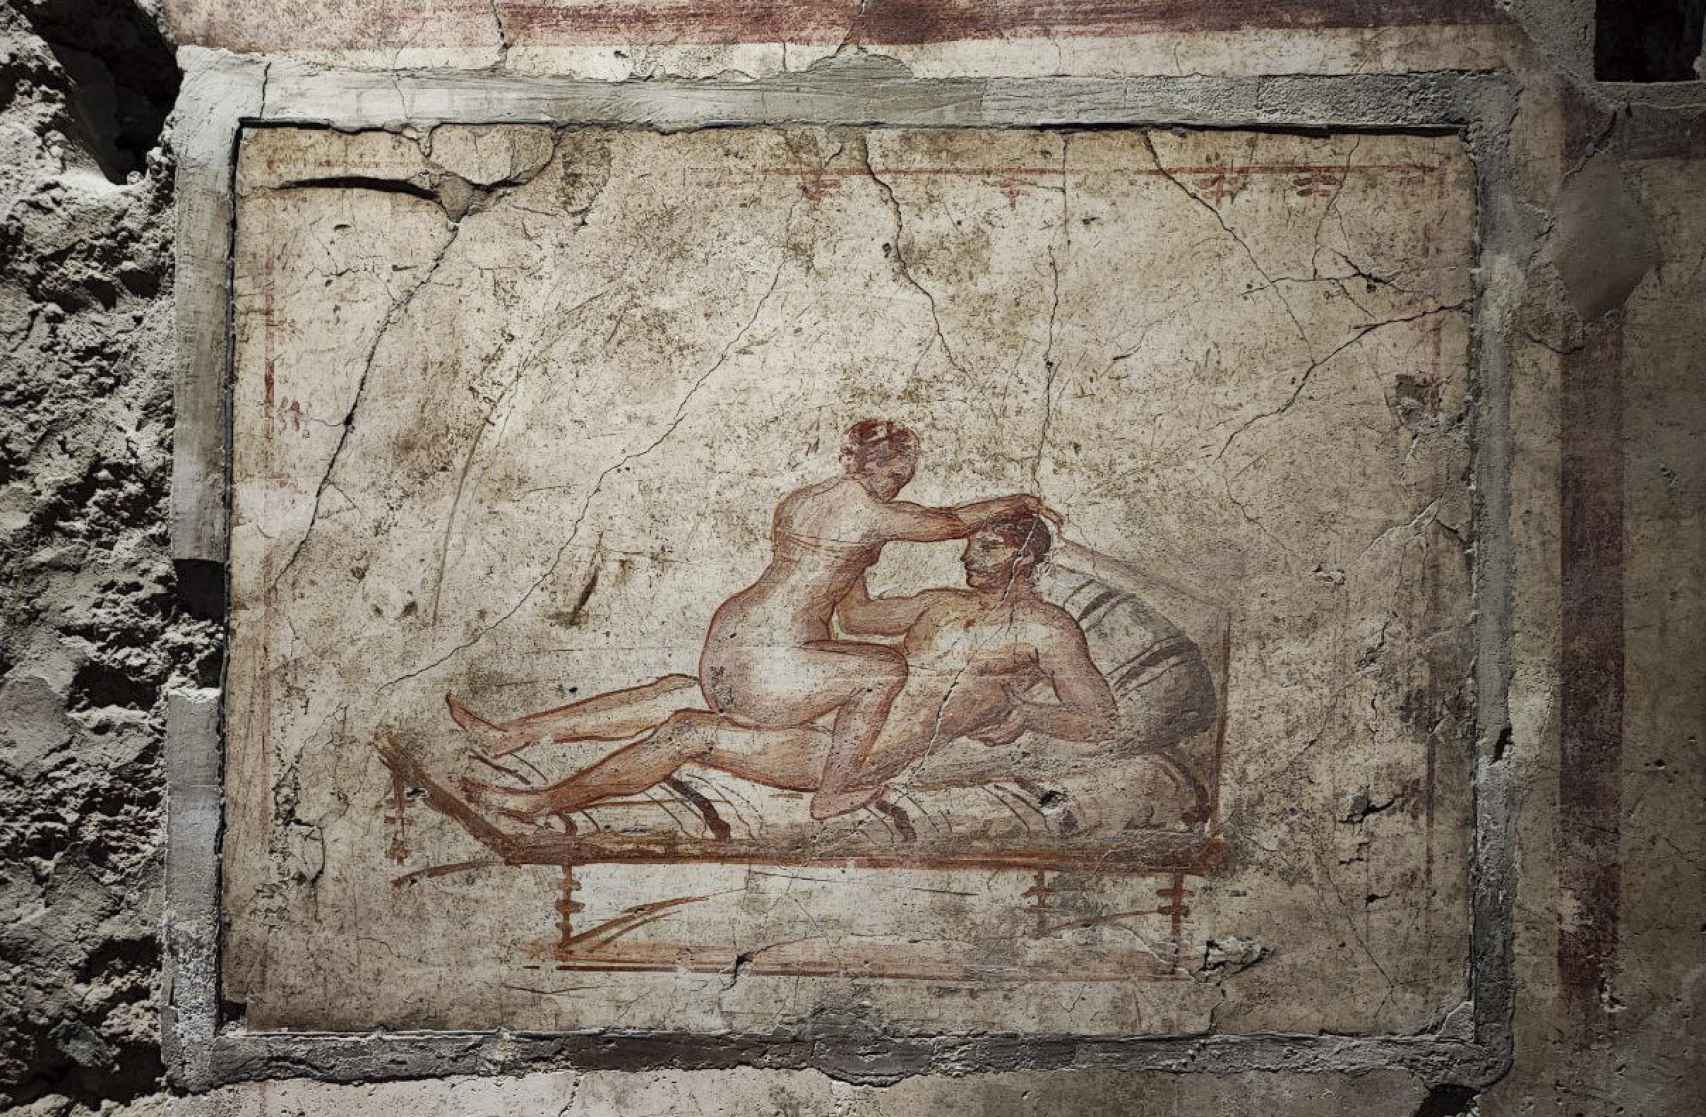 Una de las escenas eróticas de la domus pompeyana.